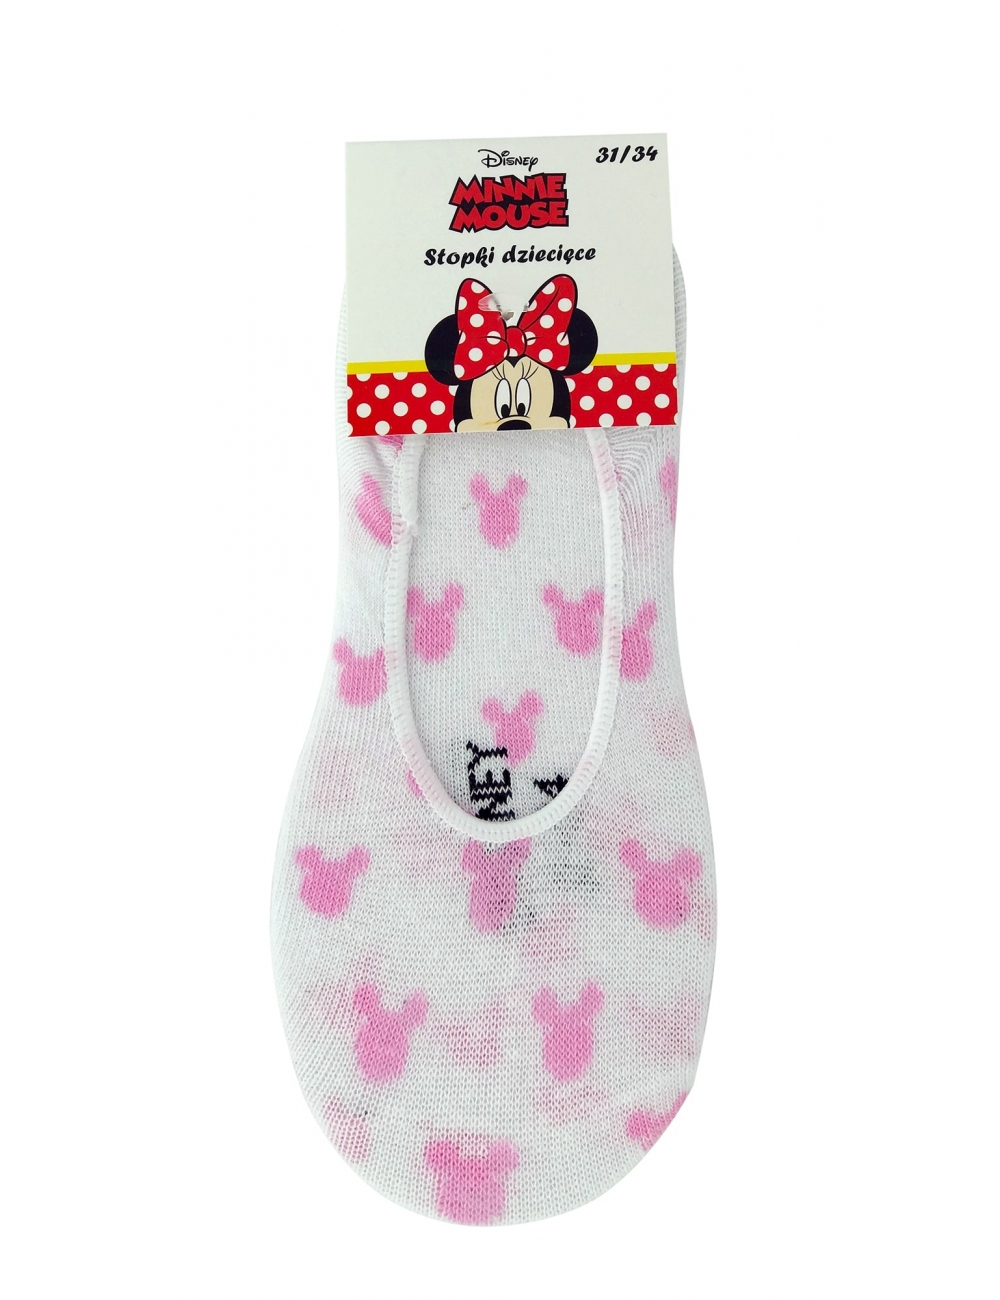 Шкарпетки (сліди) дитячі для дівчаток тм &quot;Eplum&quot; Мінні білі